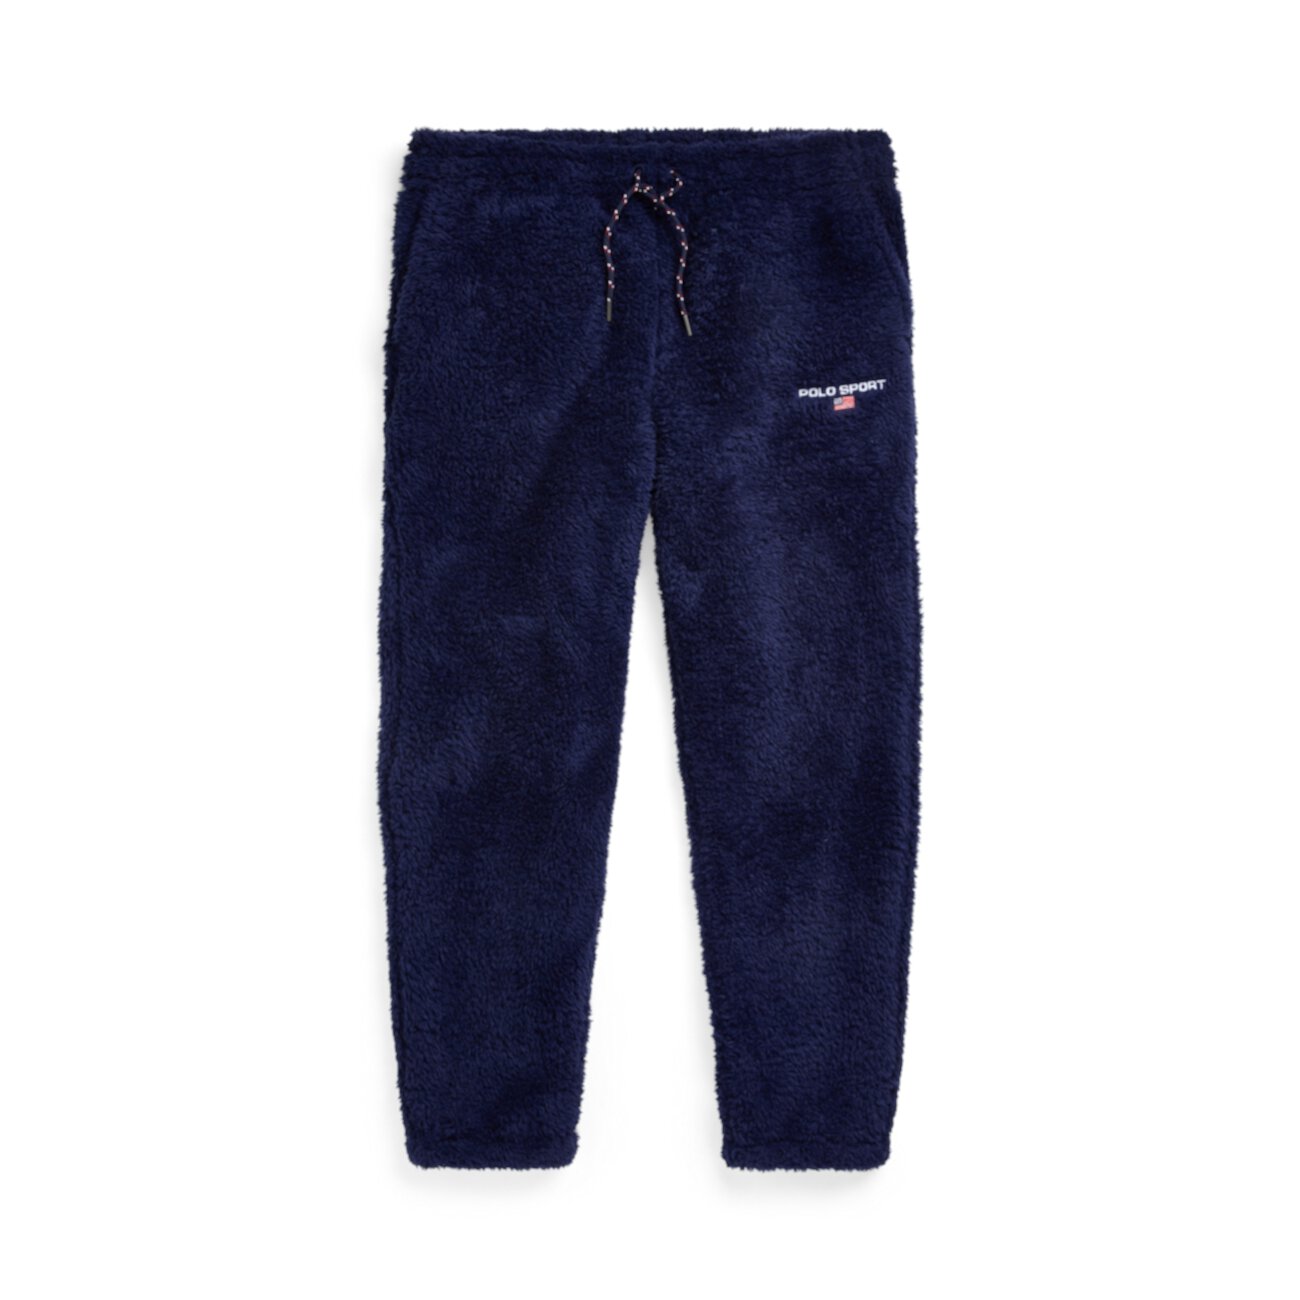 Флисовые брюки-джоггеры Polo Sport Ralph Lauren